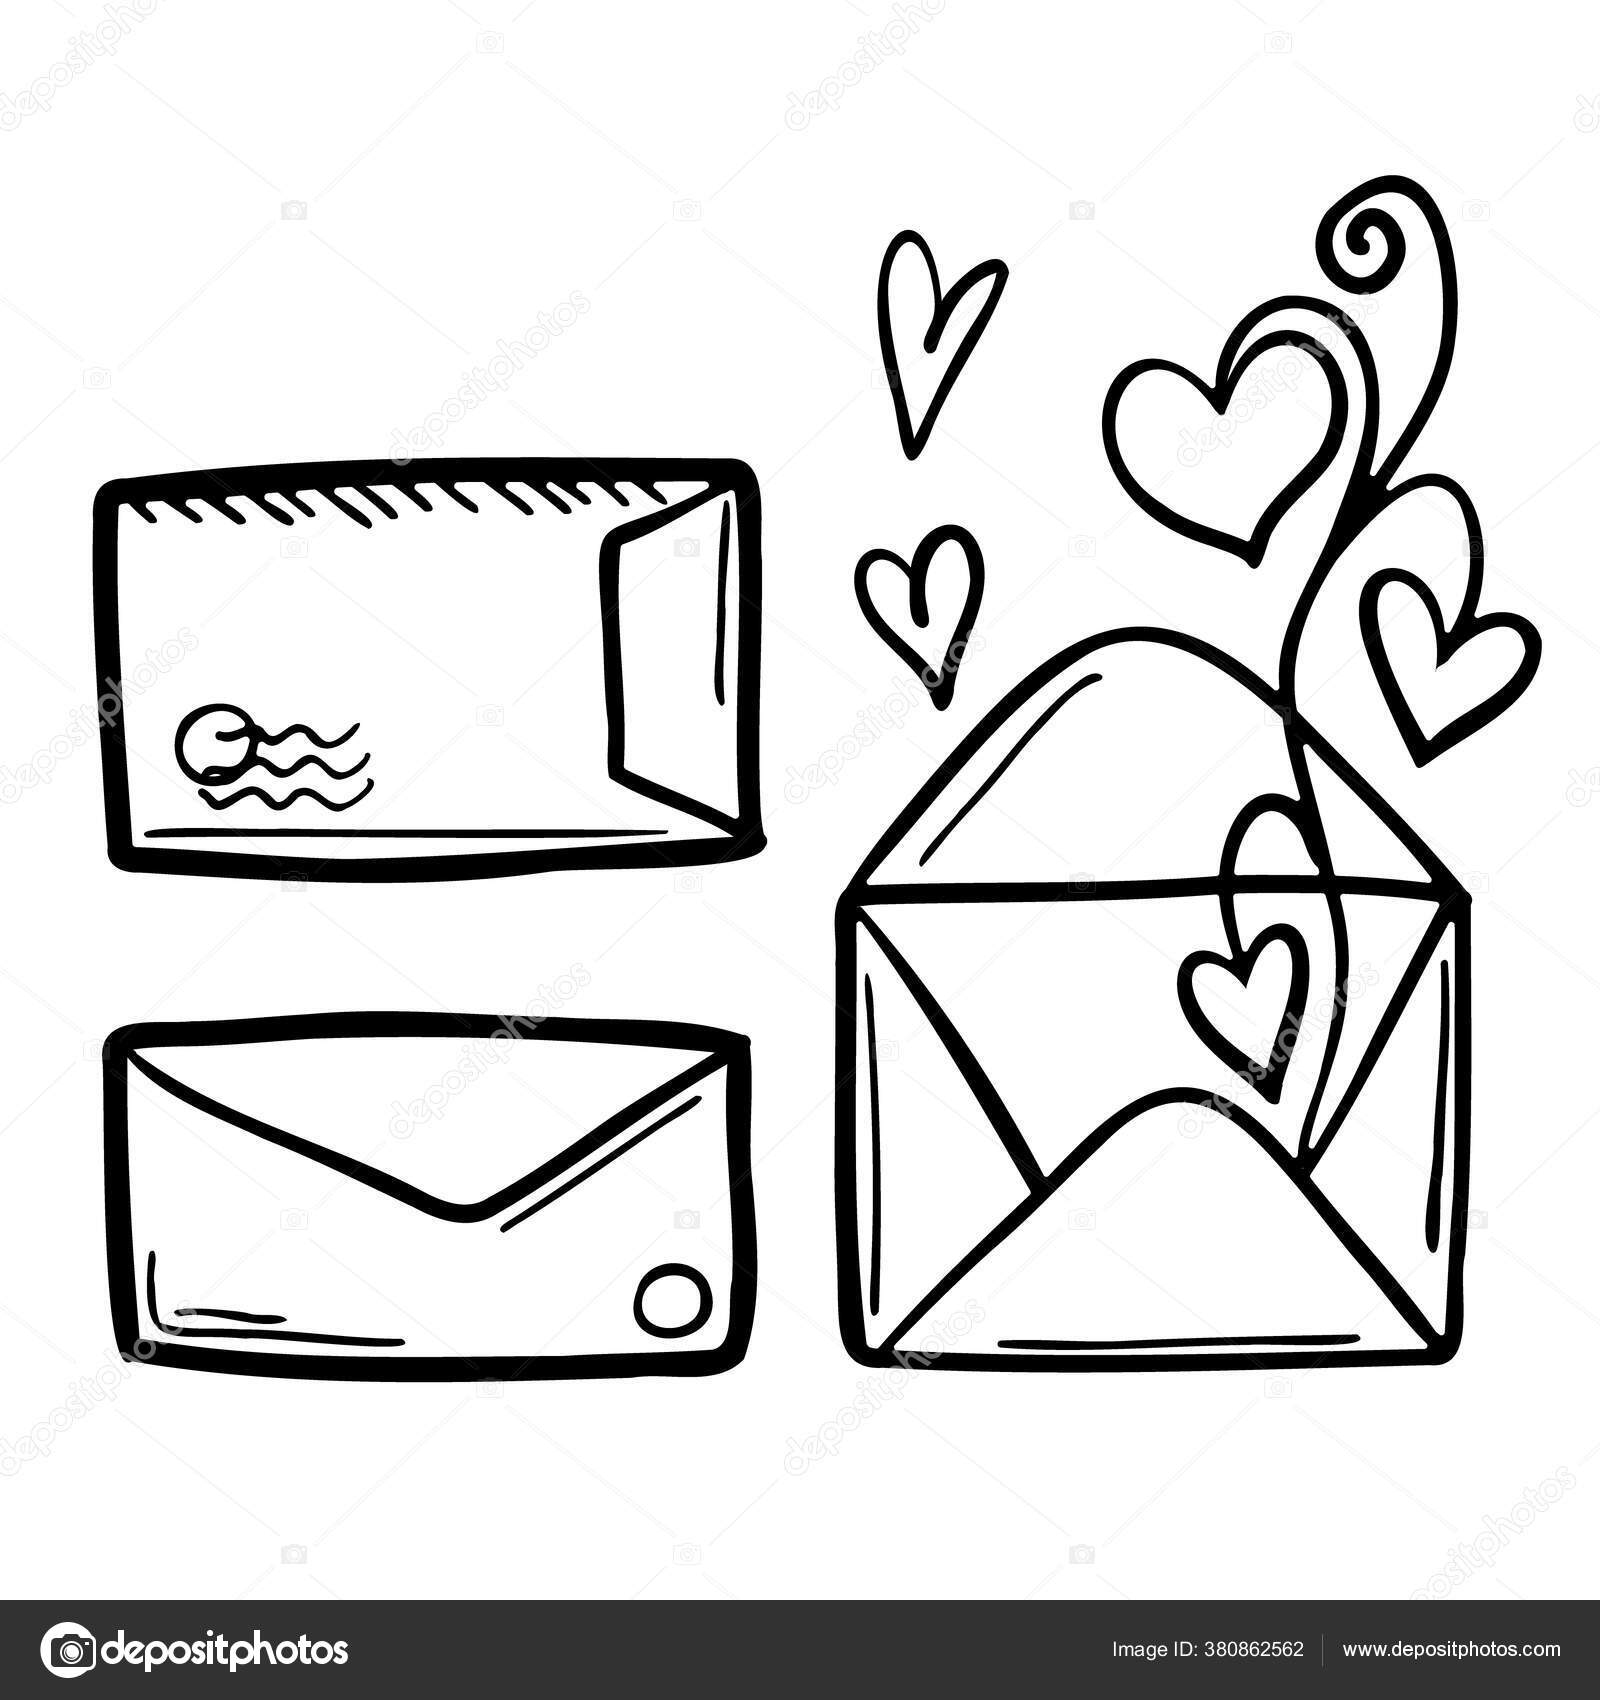 Como desenhar um envelope bonito com corações de amor \ Desenho